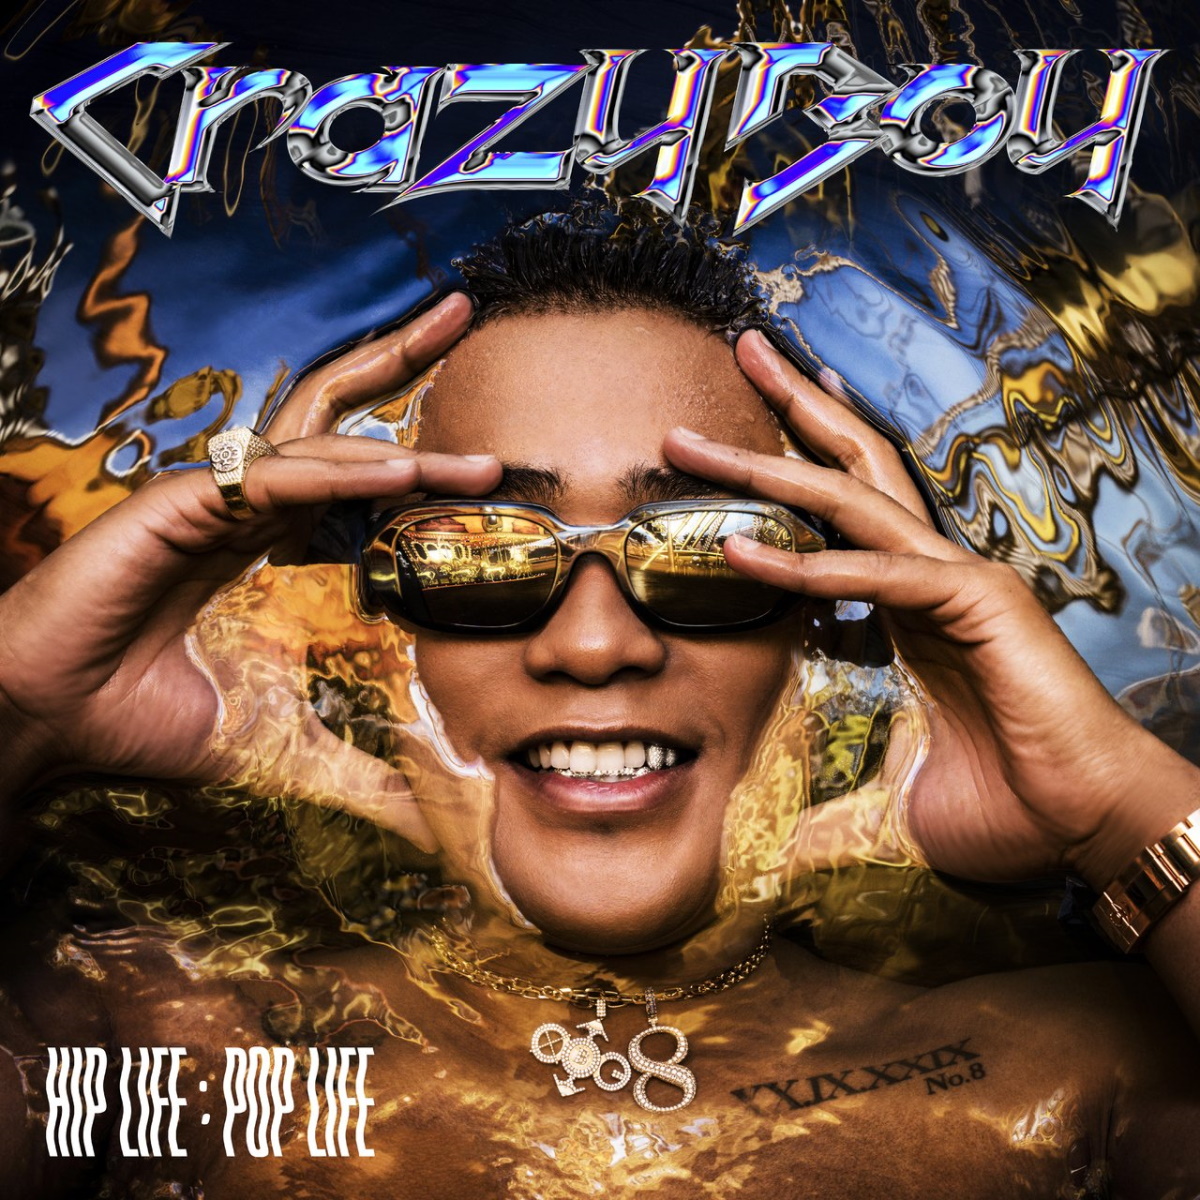 『CrazyBoy - HIP LIFE：POP LIFE』収録の『HIP LIFE：POP LIFE』ジャケット